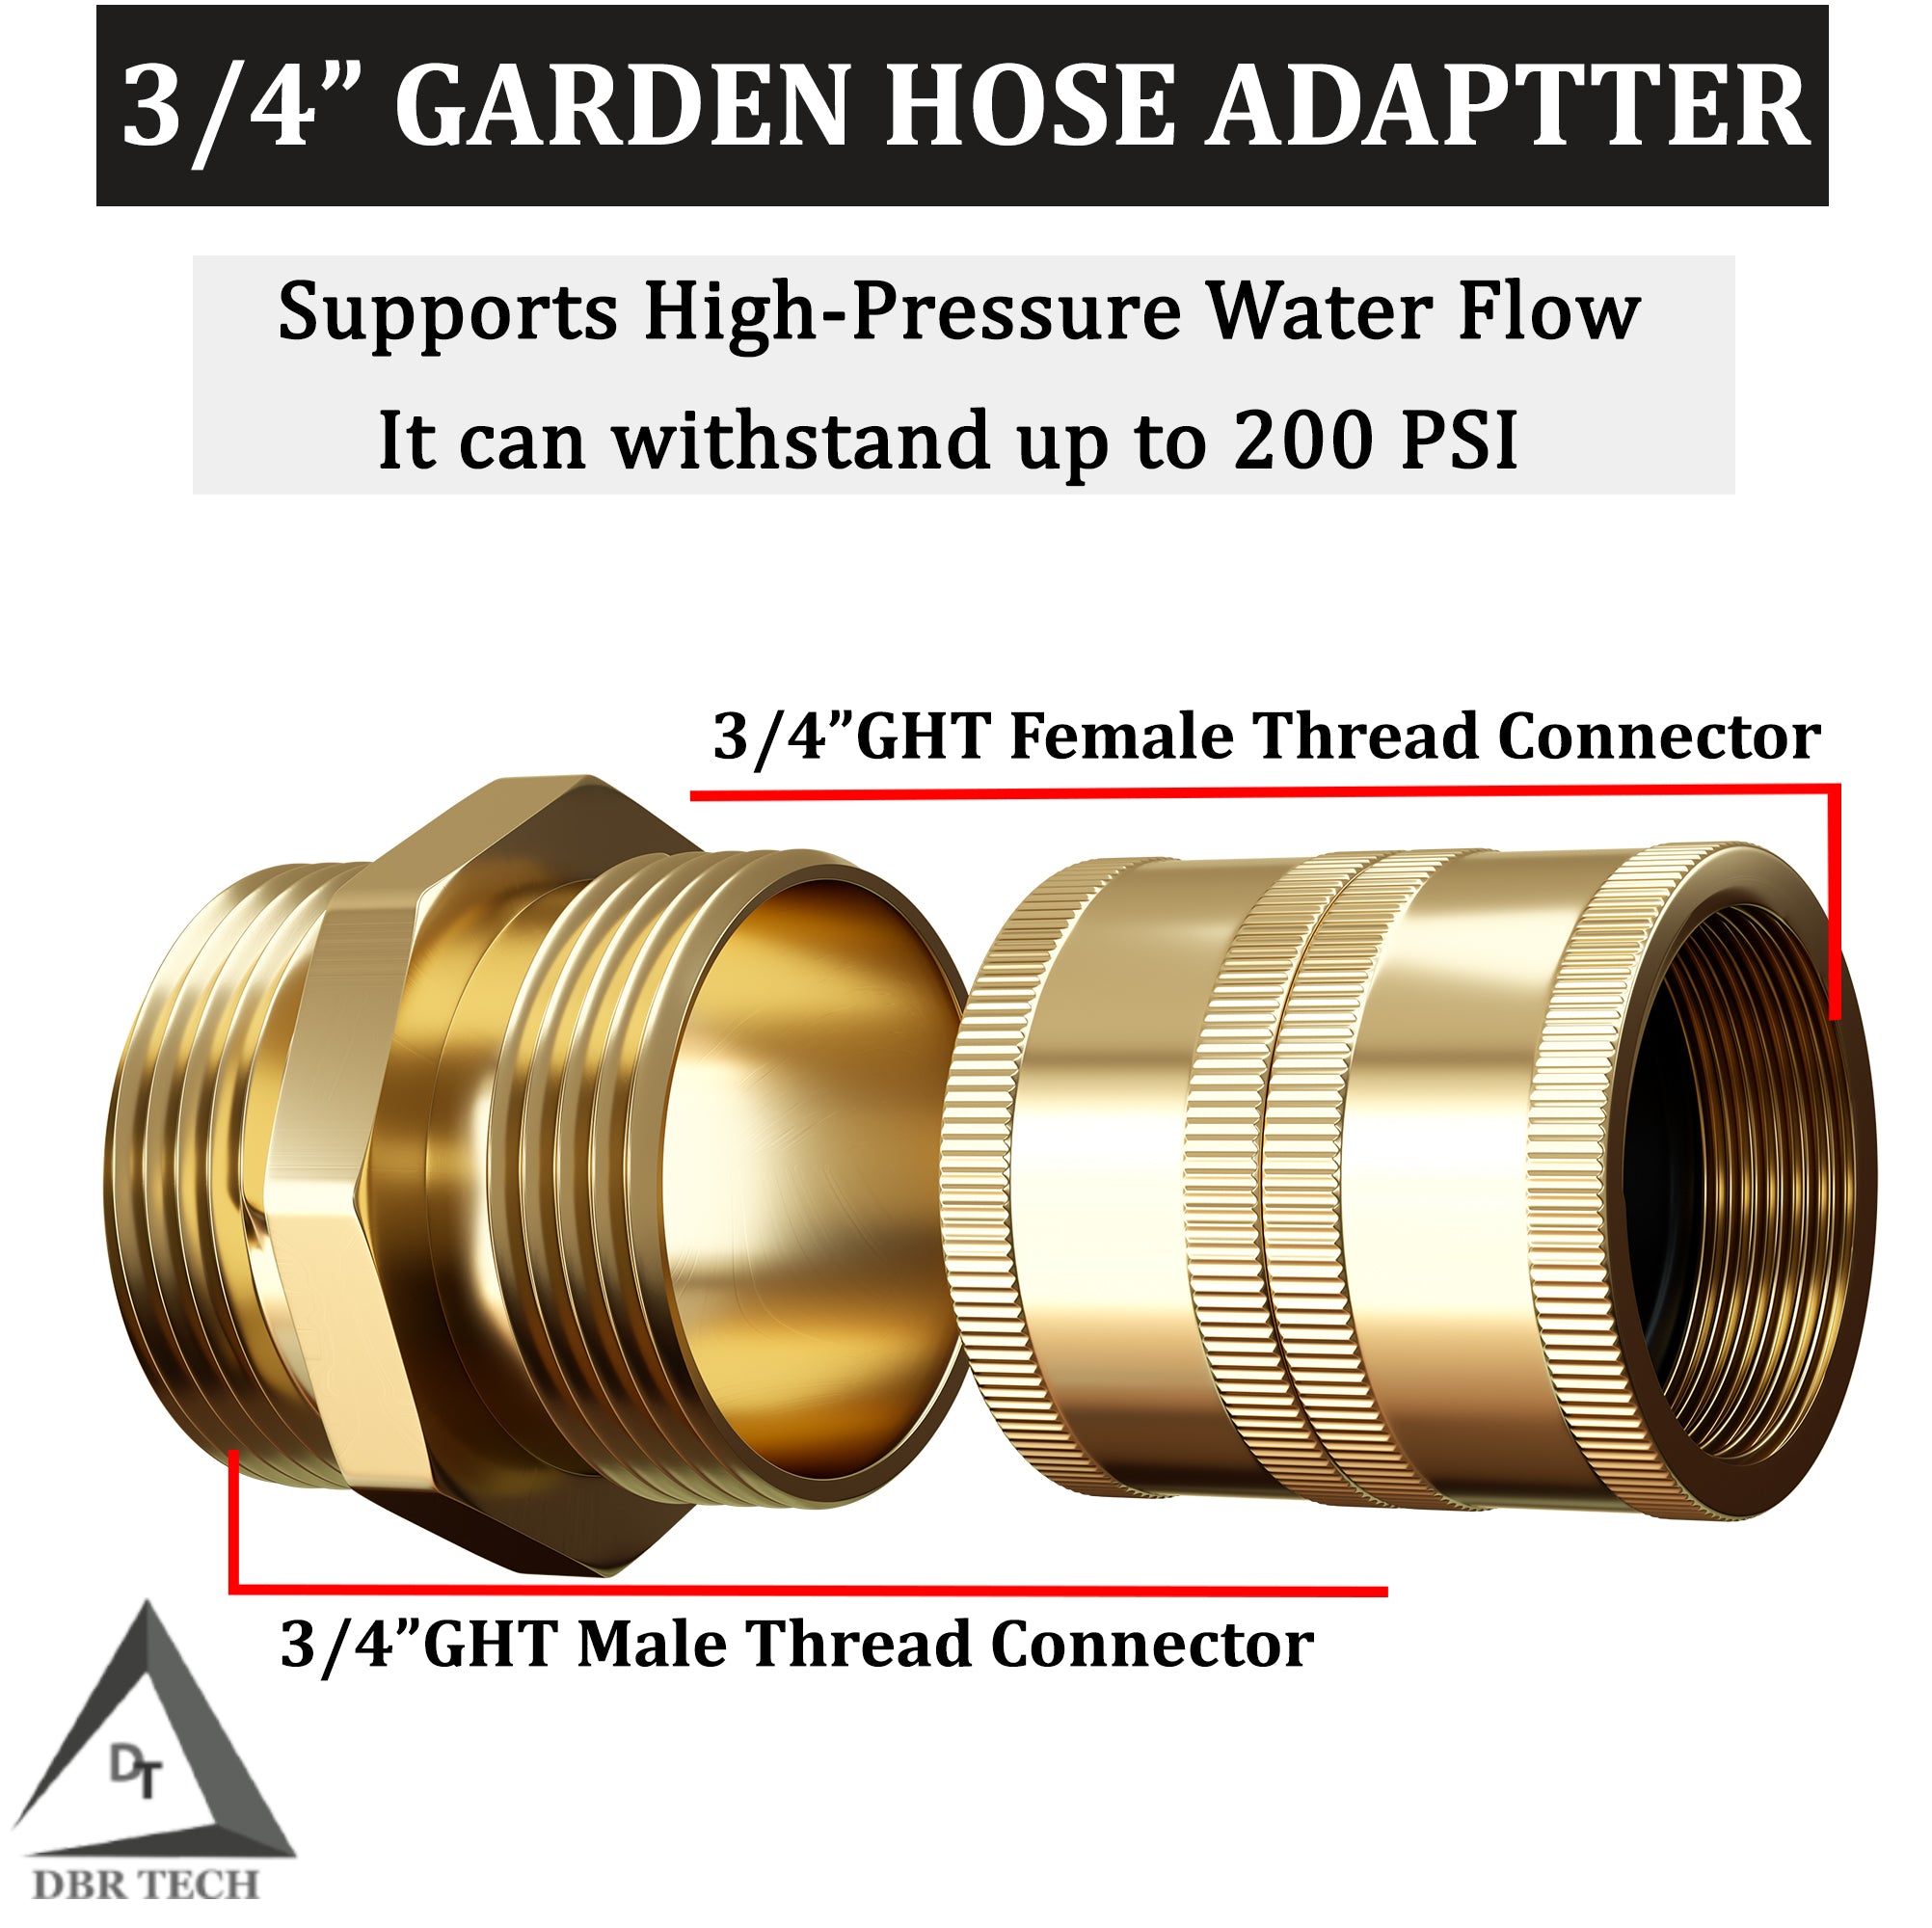 Garden Hose Adapter by